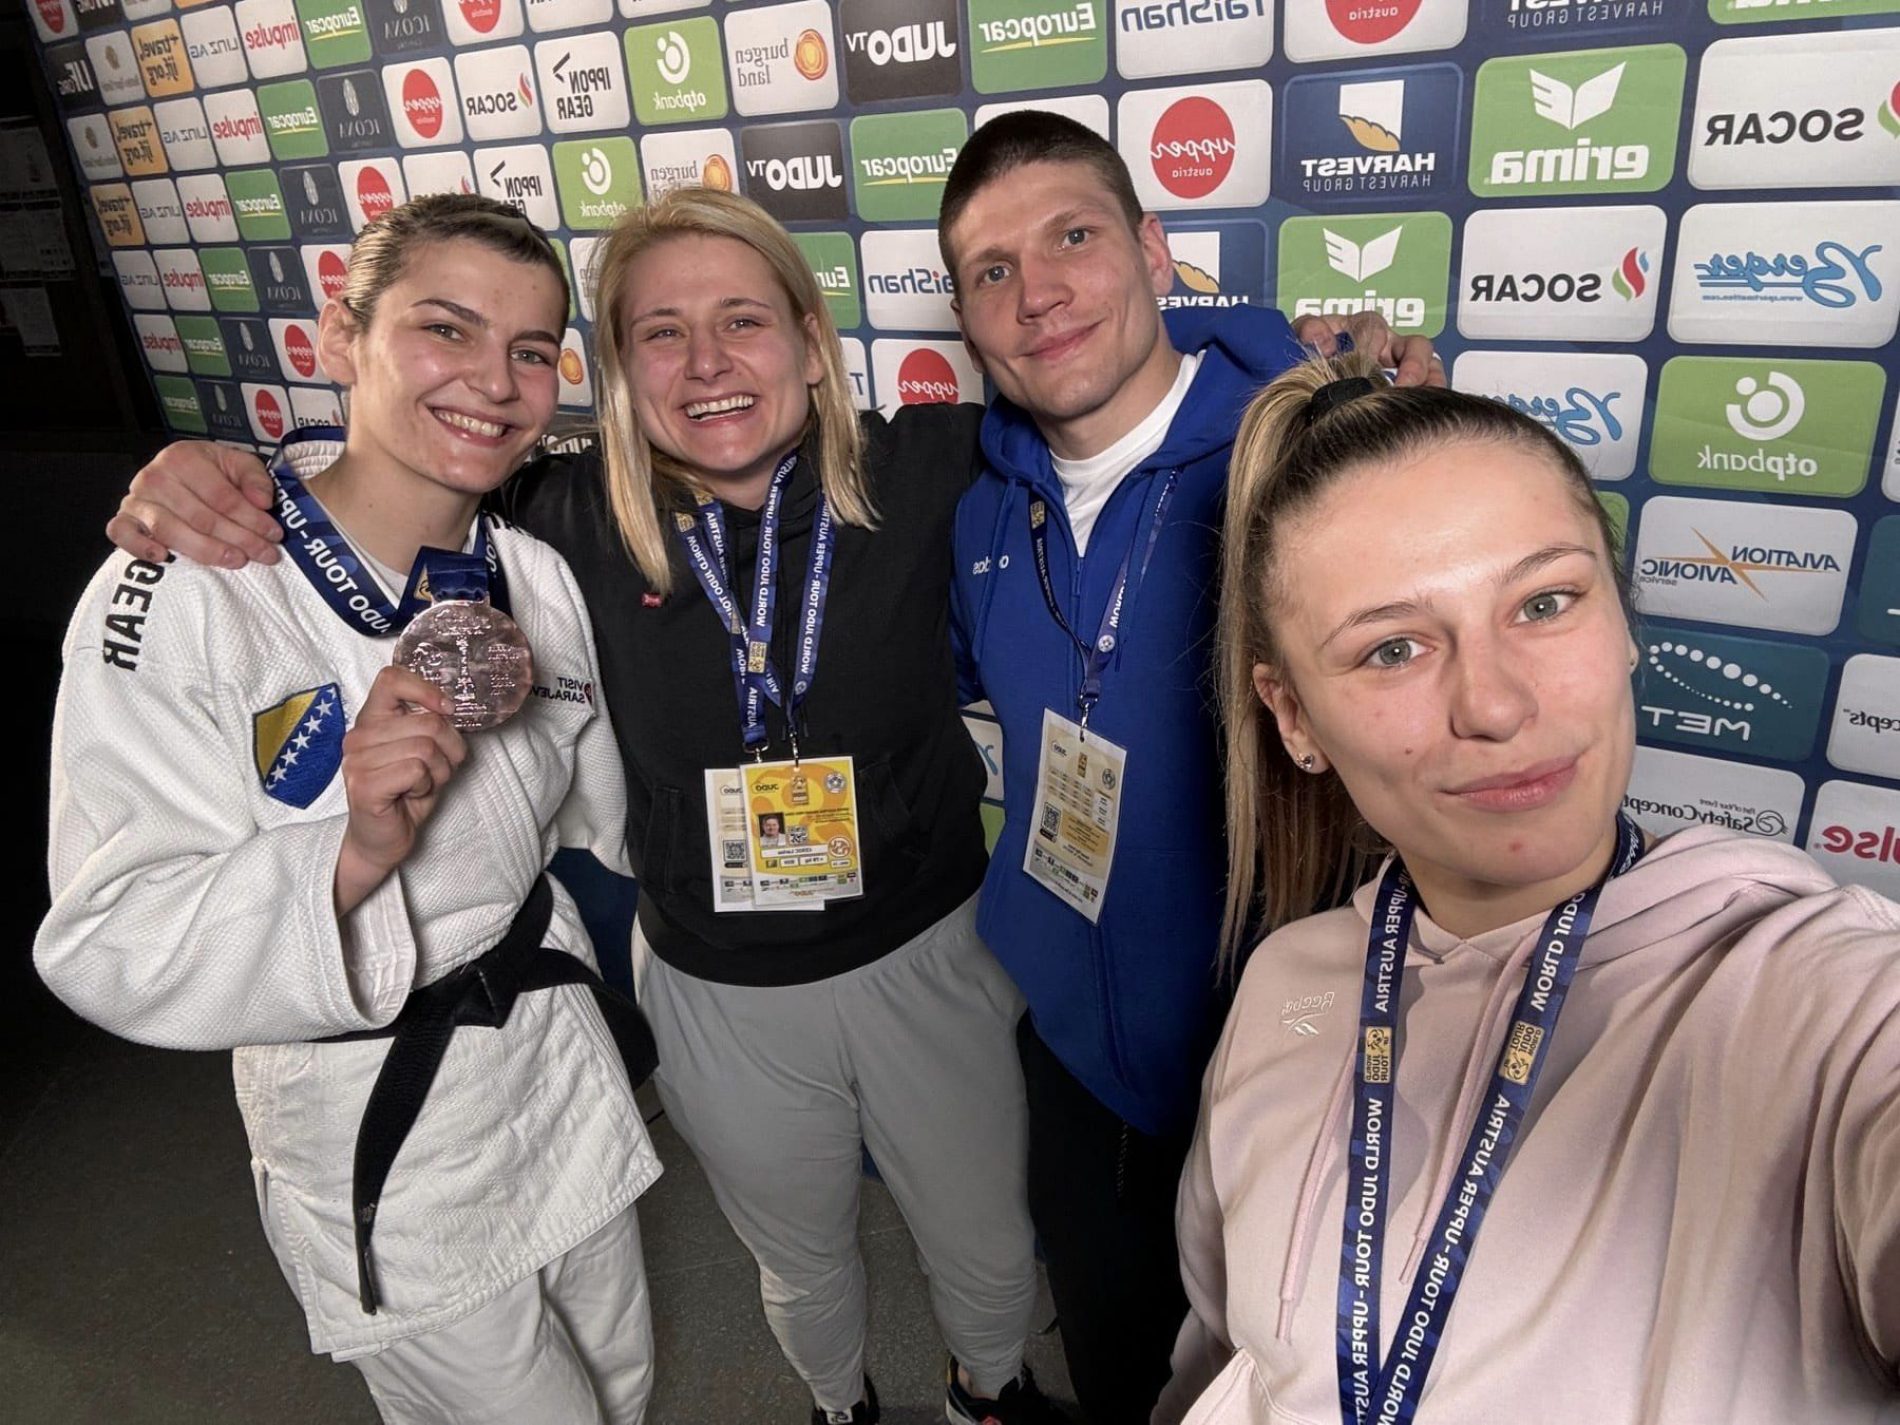 Samardžić osvojila bronzu, Cerić 5. na Judo Grand Prix turniru u Austriji